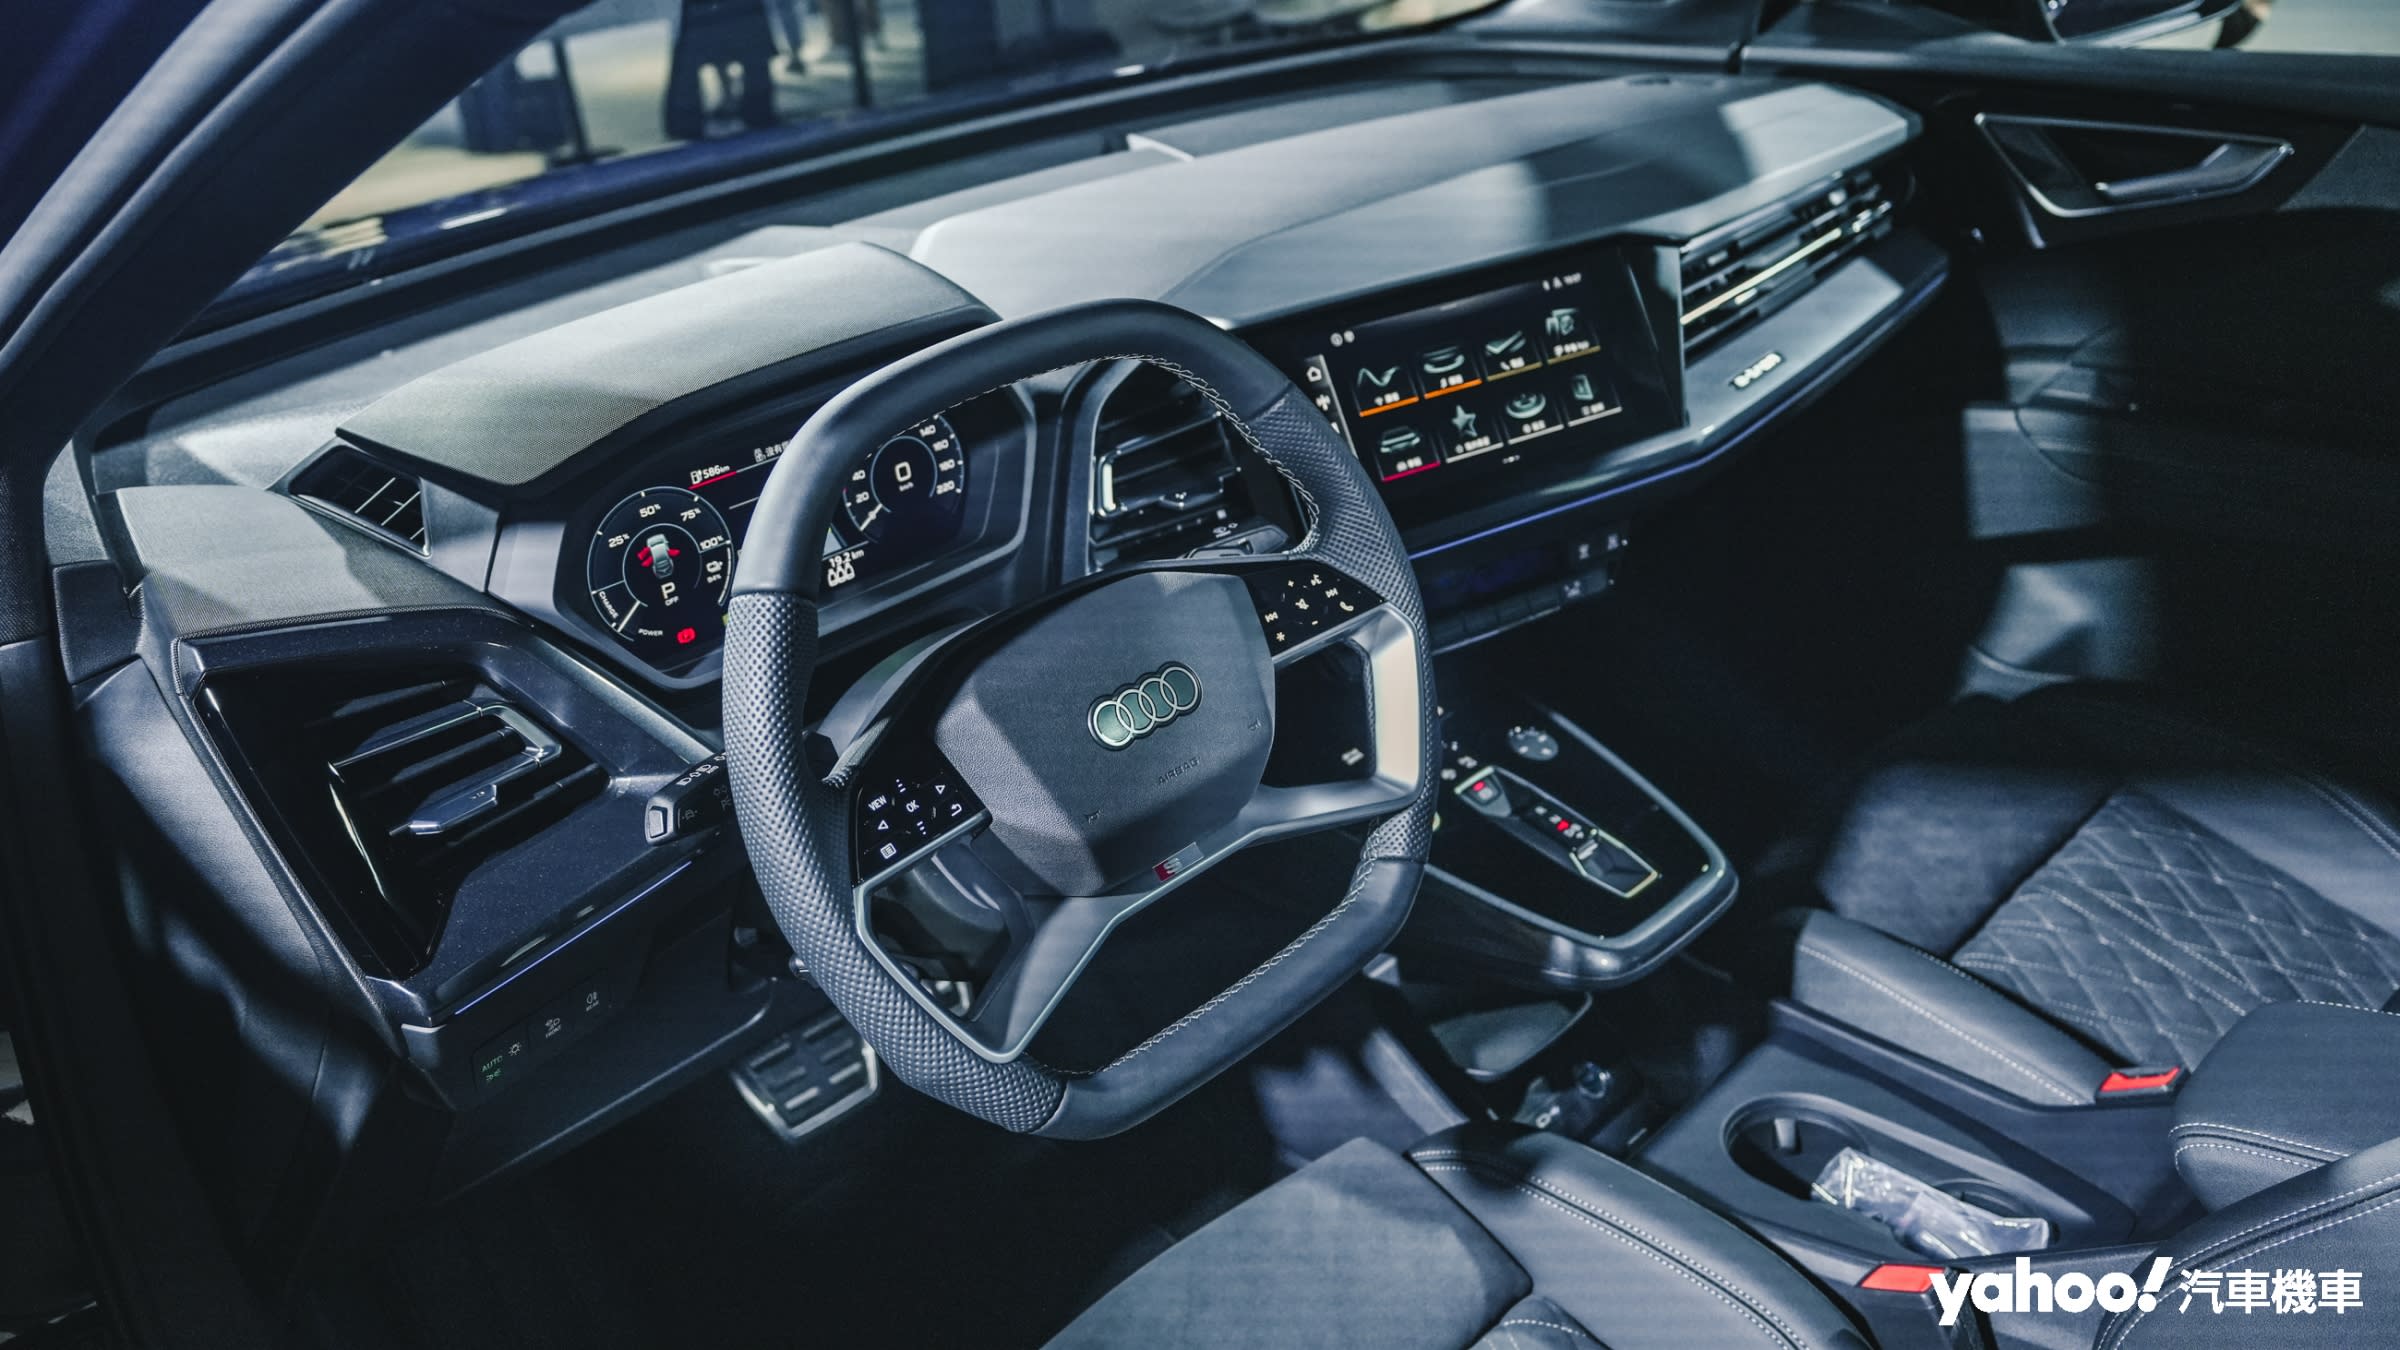 車艙以10.1吋中央觸控螢幕和10.25吋數位儀表所構成。